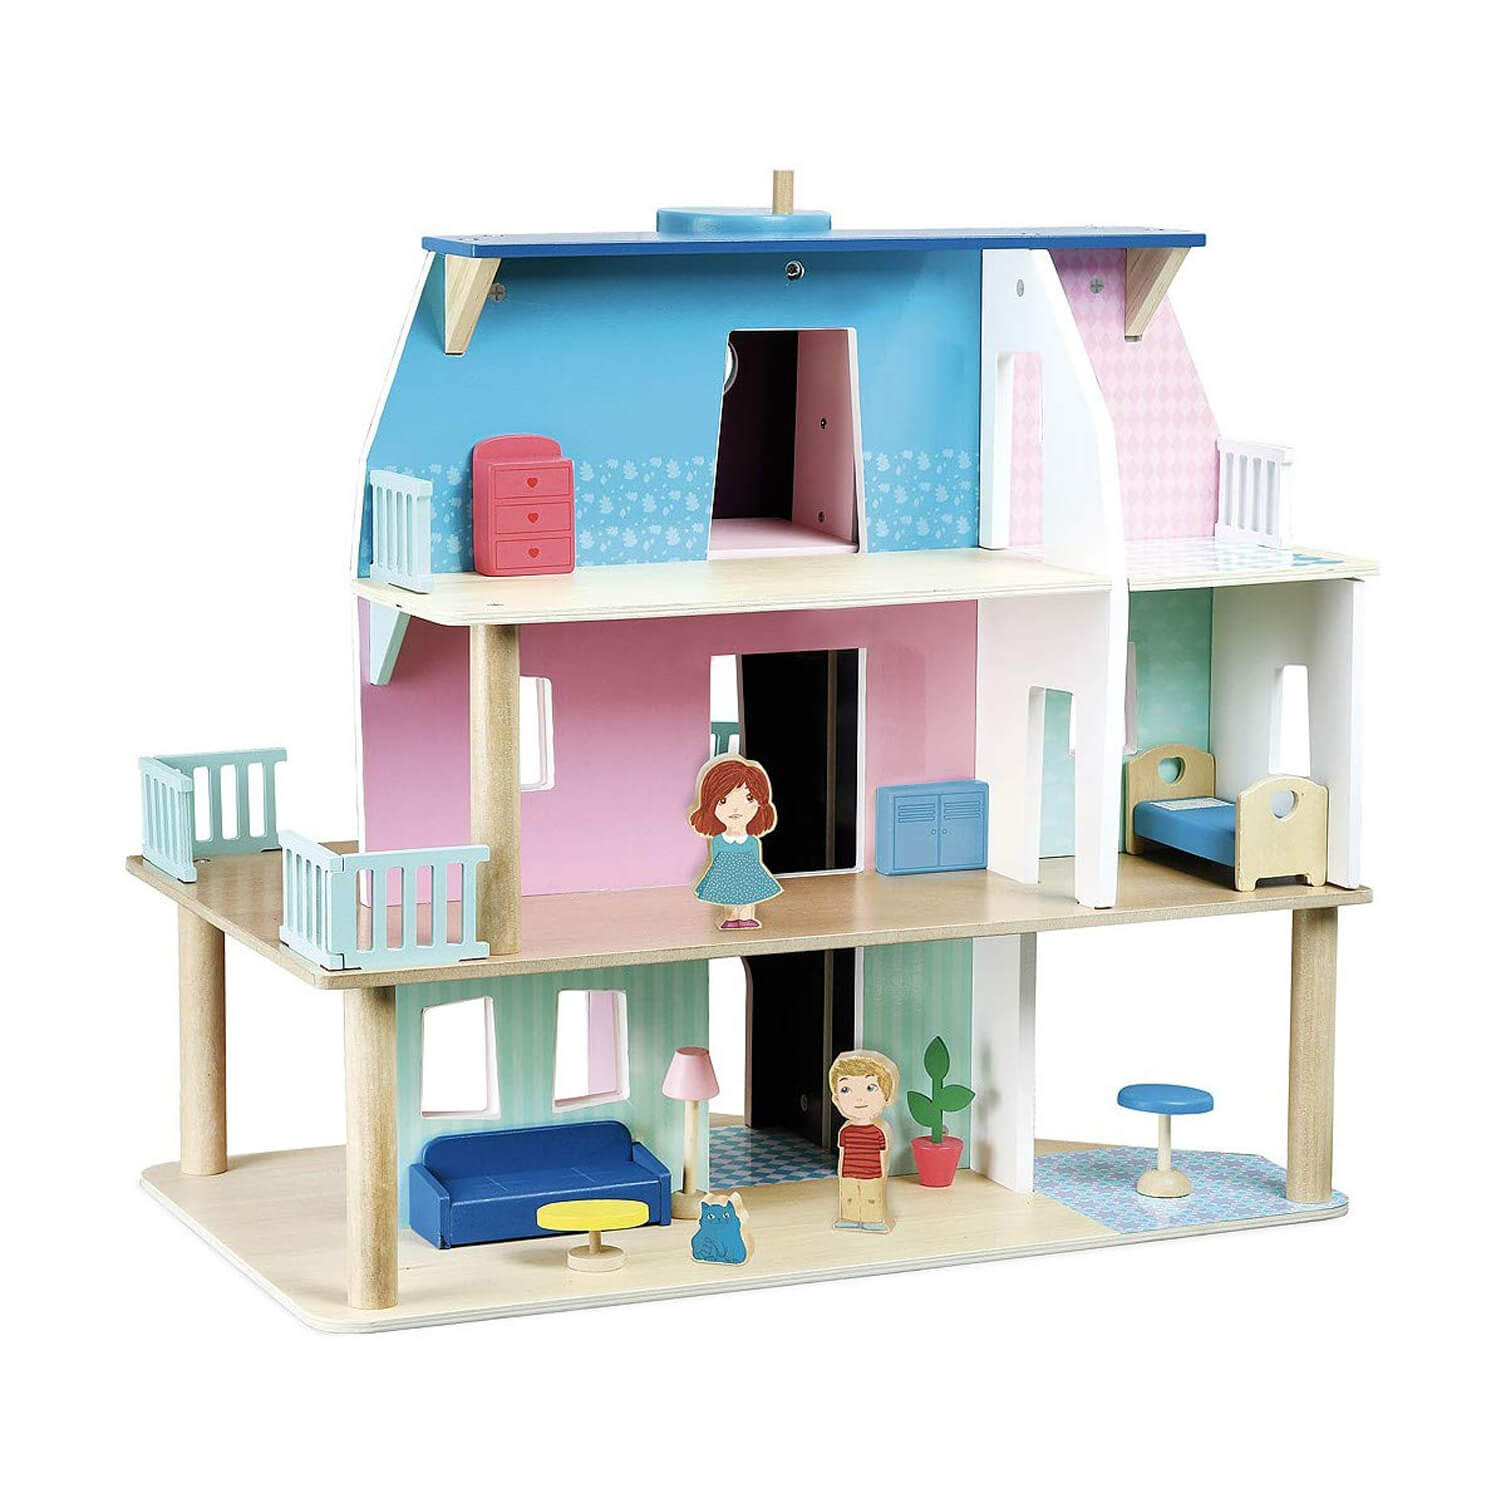 Grande maison de poupée en bois a construire 3 étages avec ascenceur